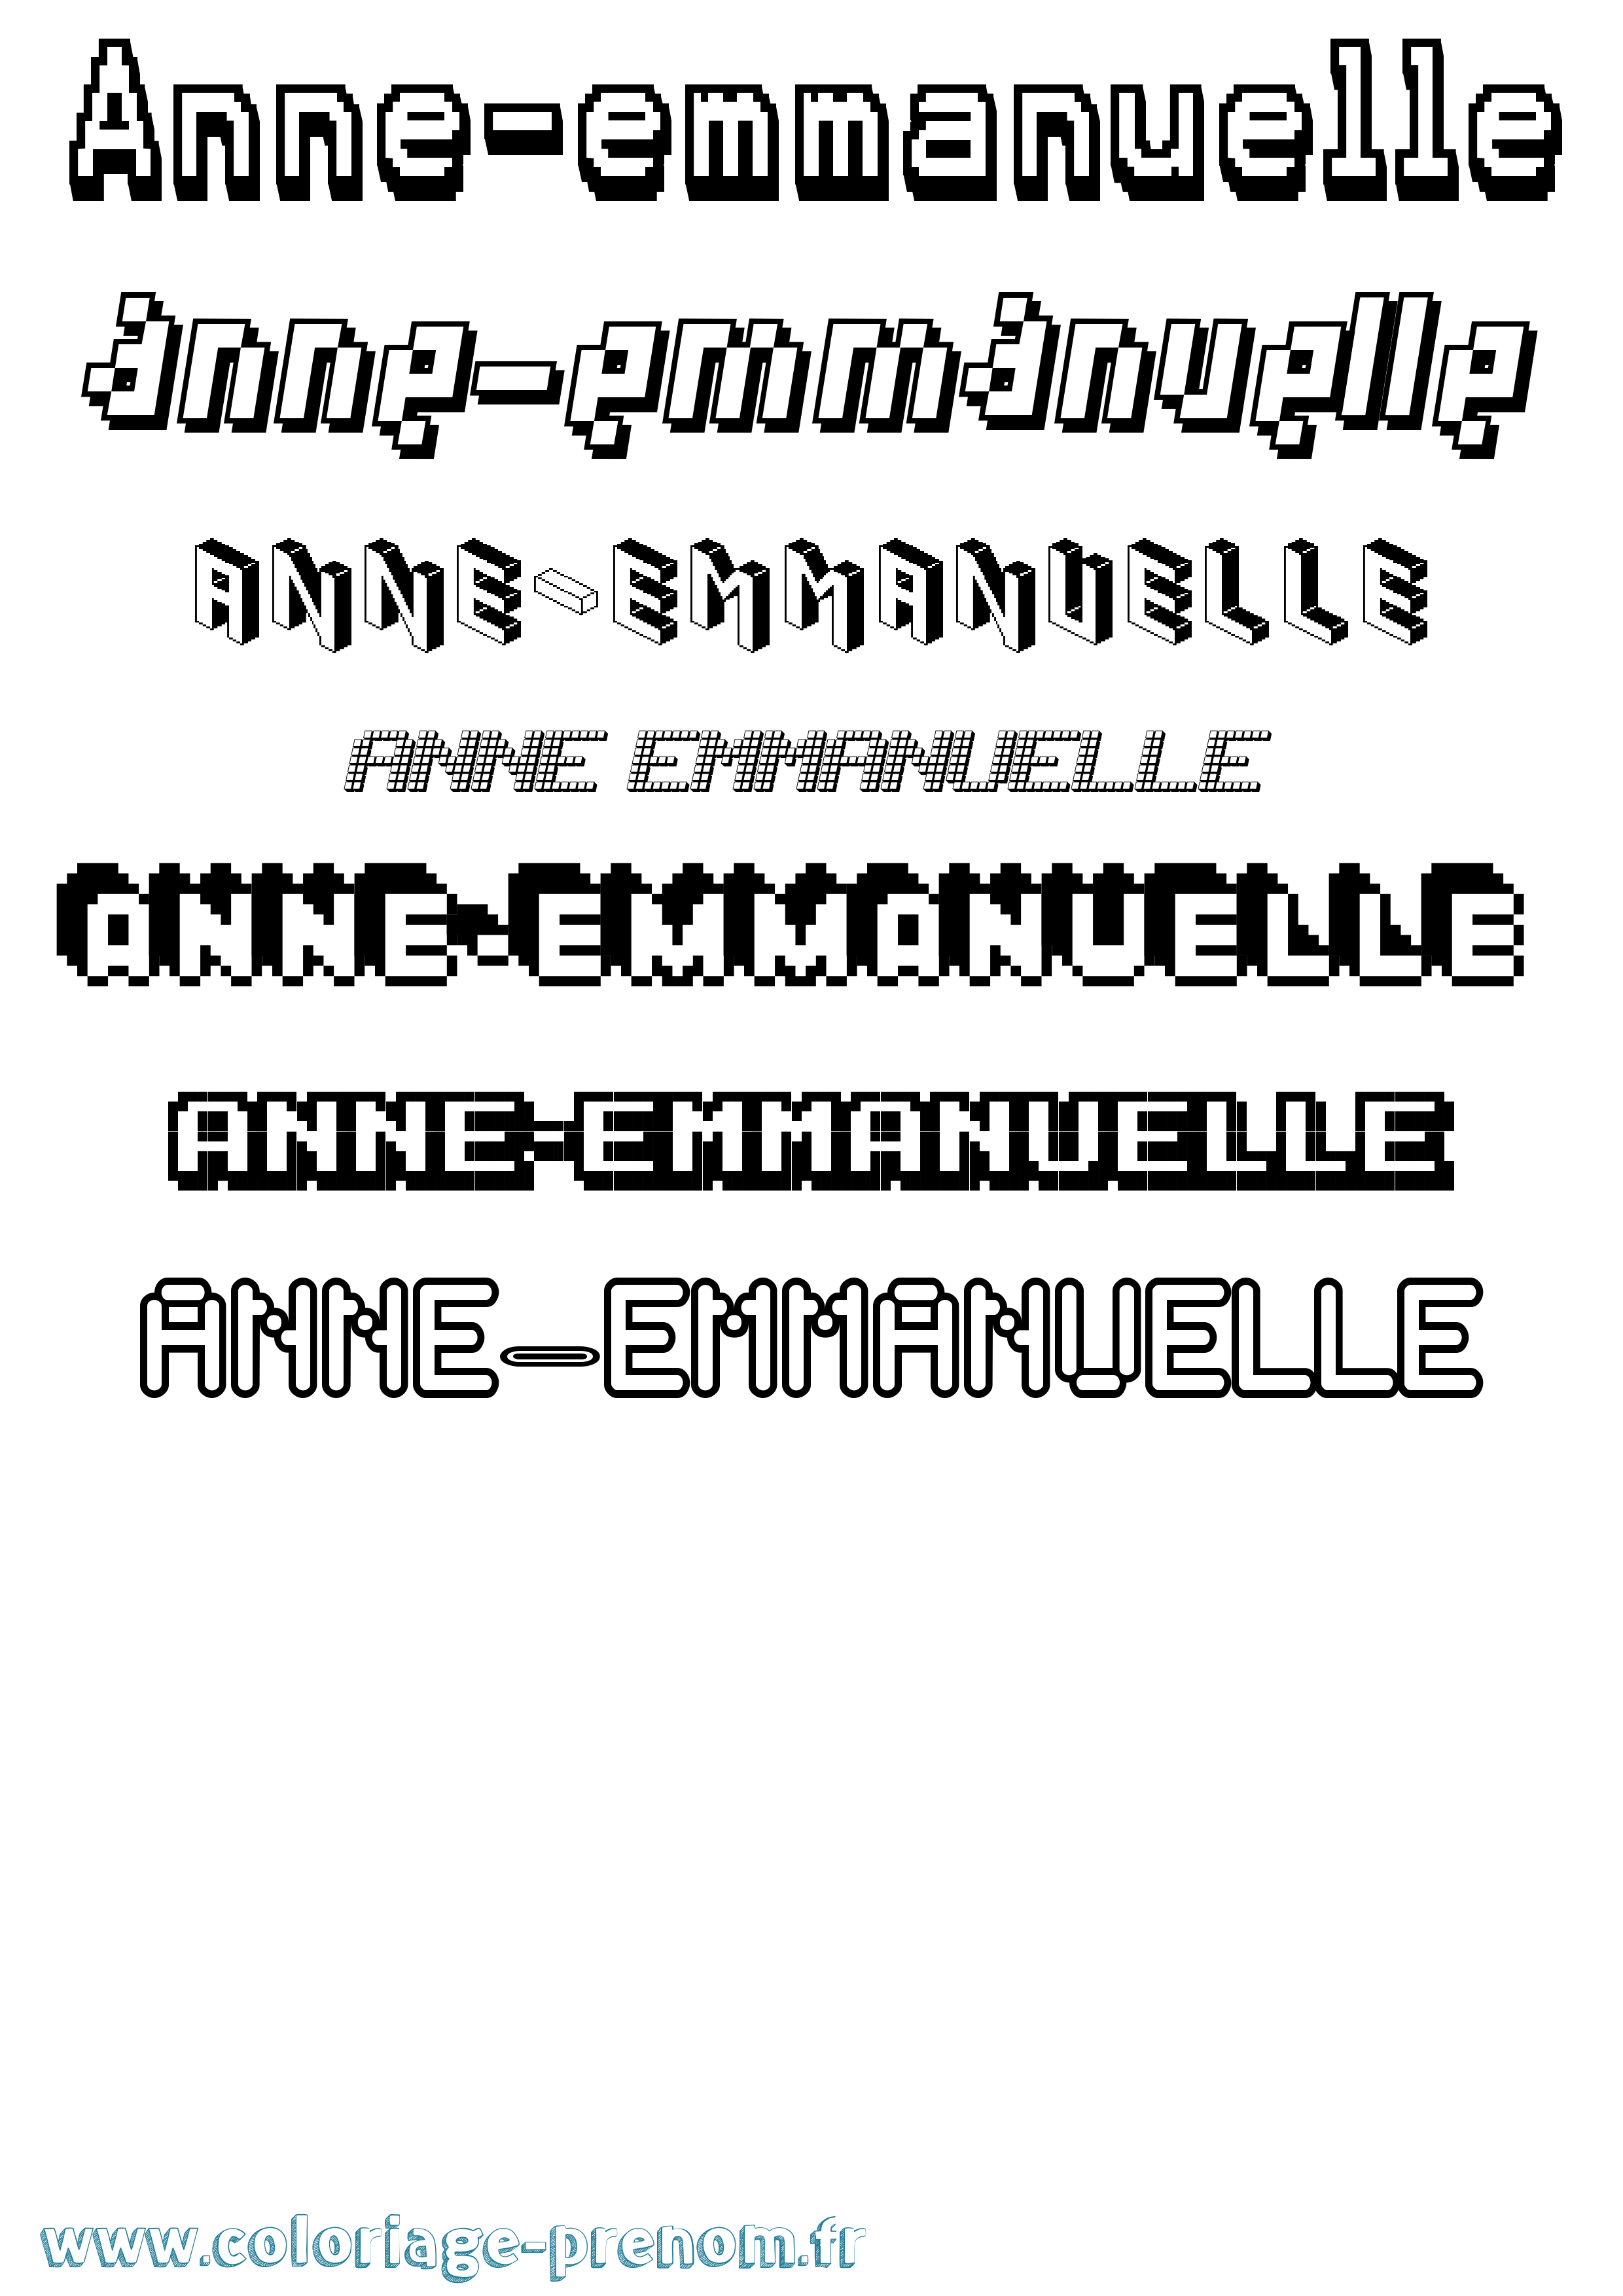 Coloriage prénom Anne-Emmanuelle Pixel